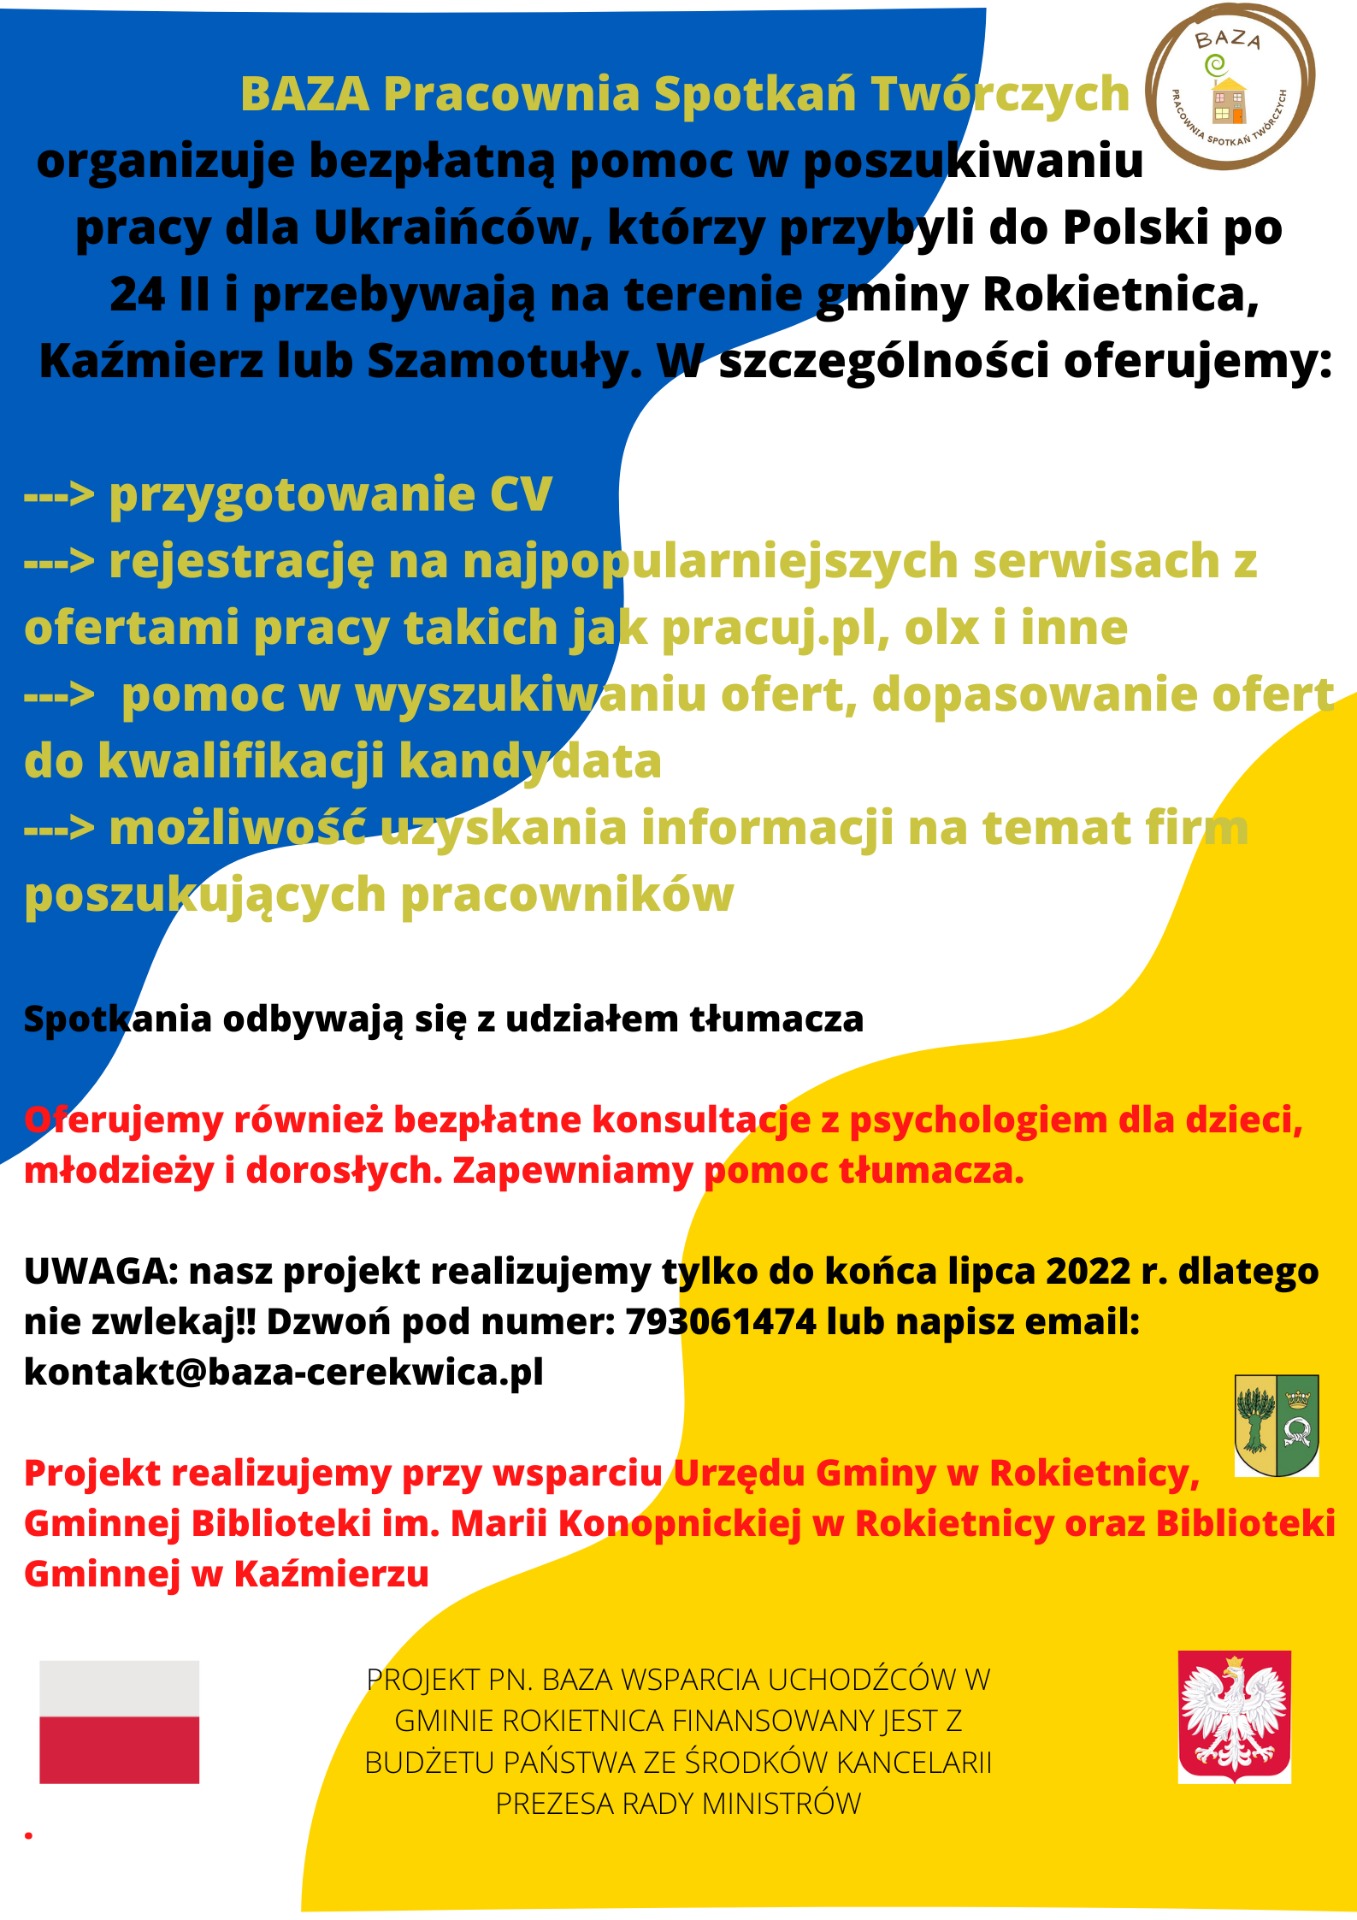 BAZA - pomoc w poszukiwaniu pracy dla osób z UKRAINY - Obrazek 1